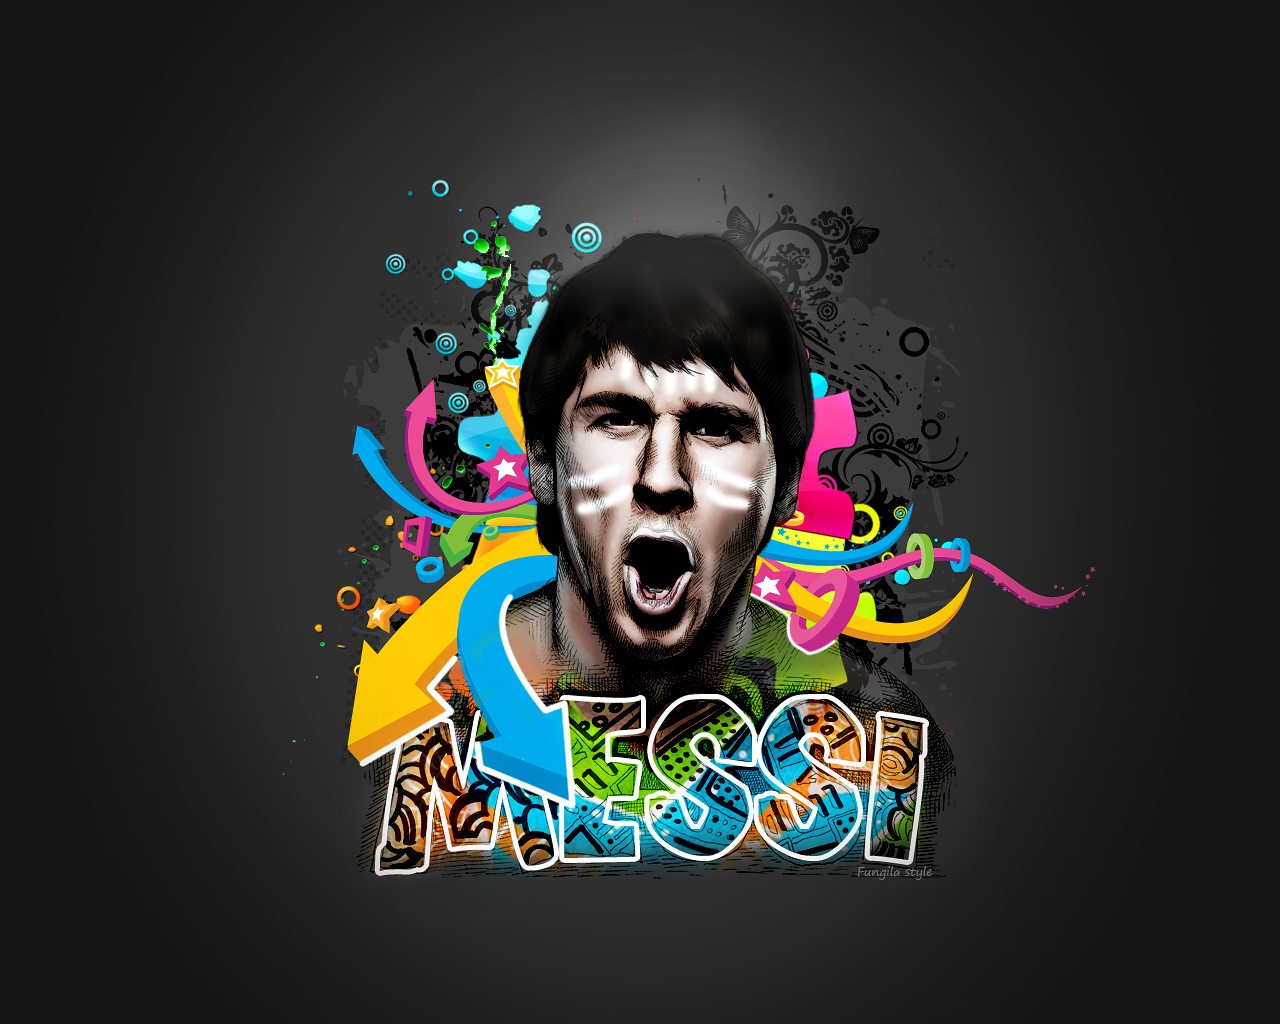 Description Lionel Messi Wallpaper is a hi res Wallpaper for pc